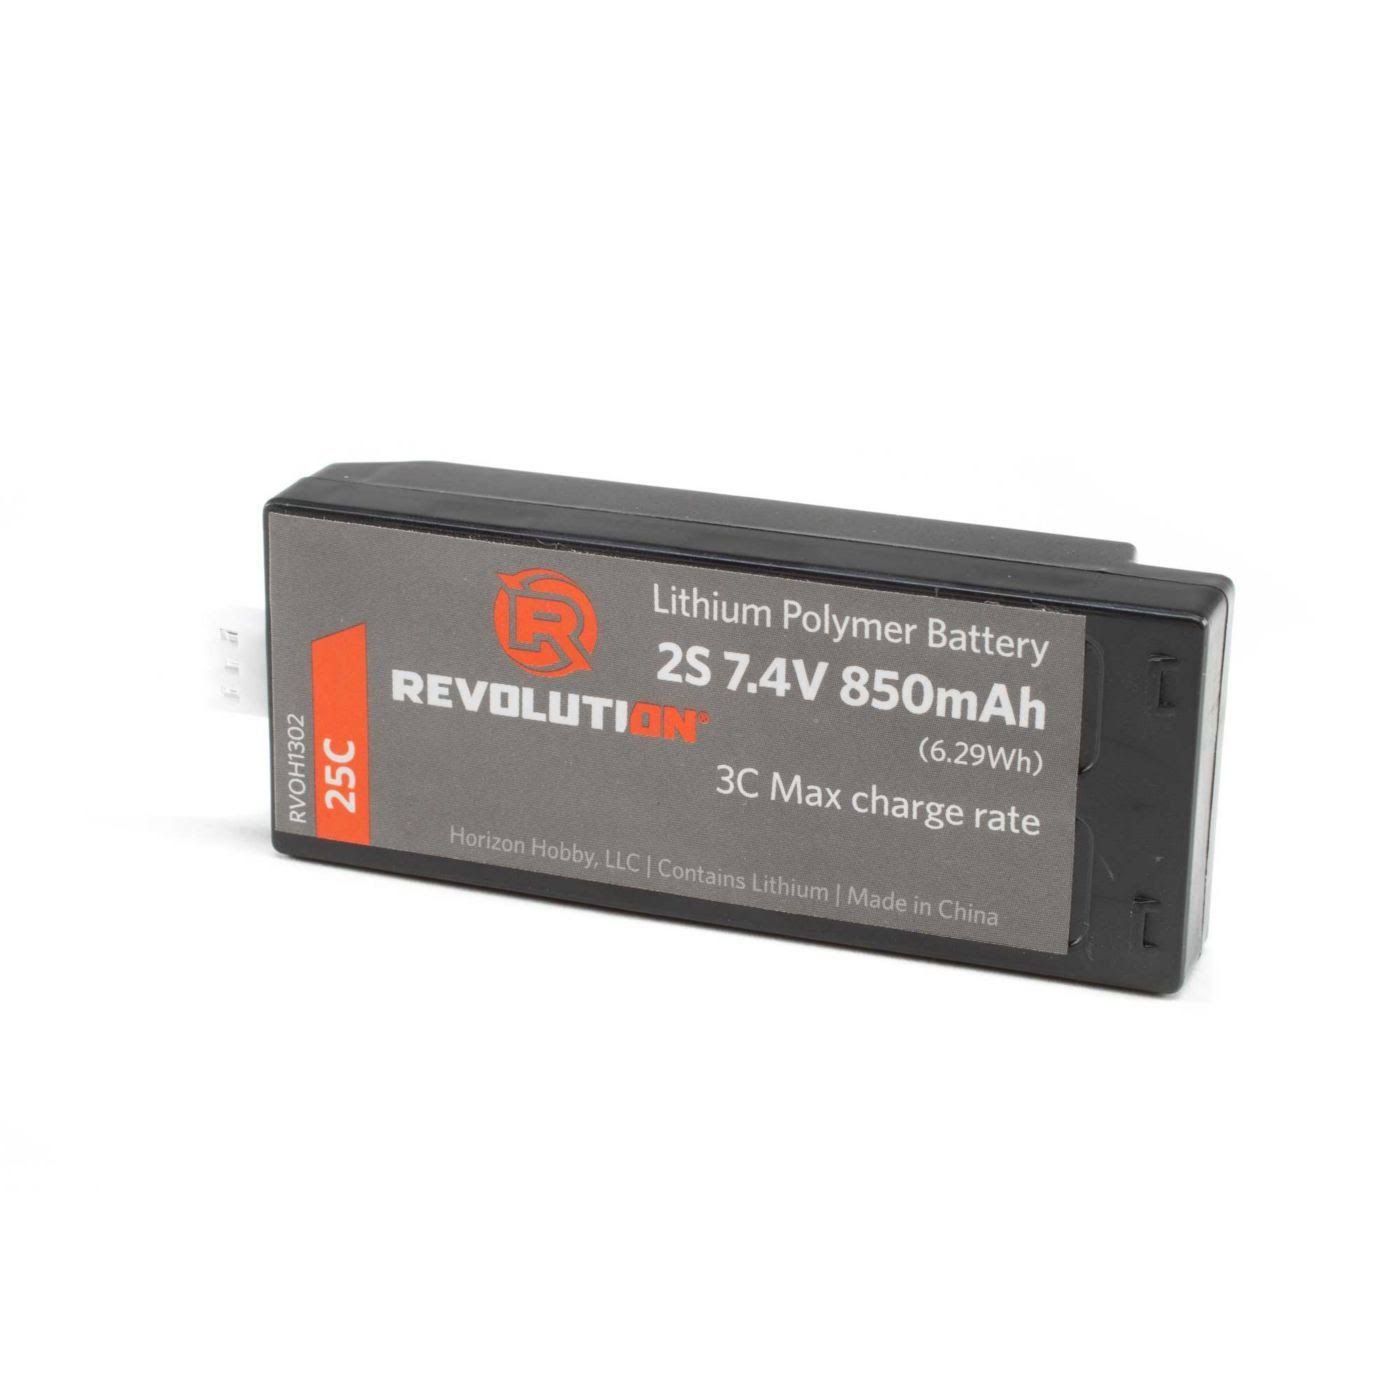 Revolution H1302 - 850mAh 2S 7.4V Lipo Battery: Vizo XL